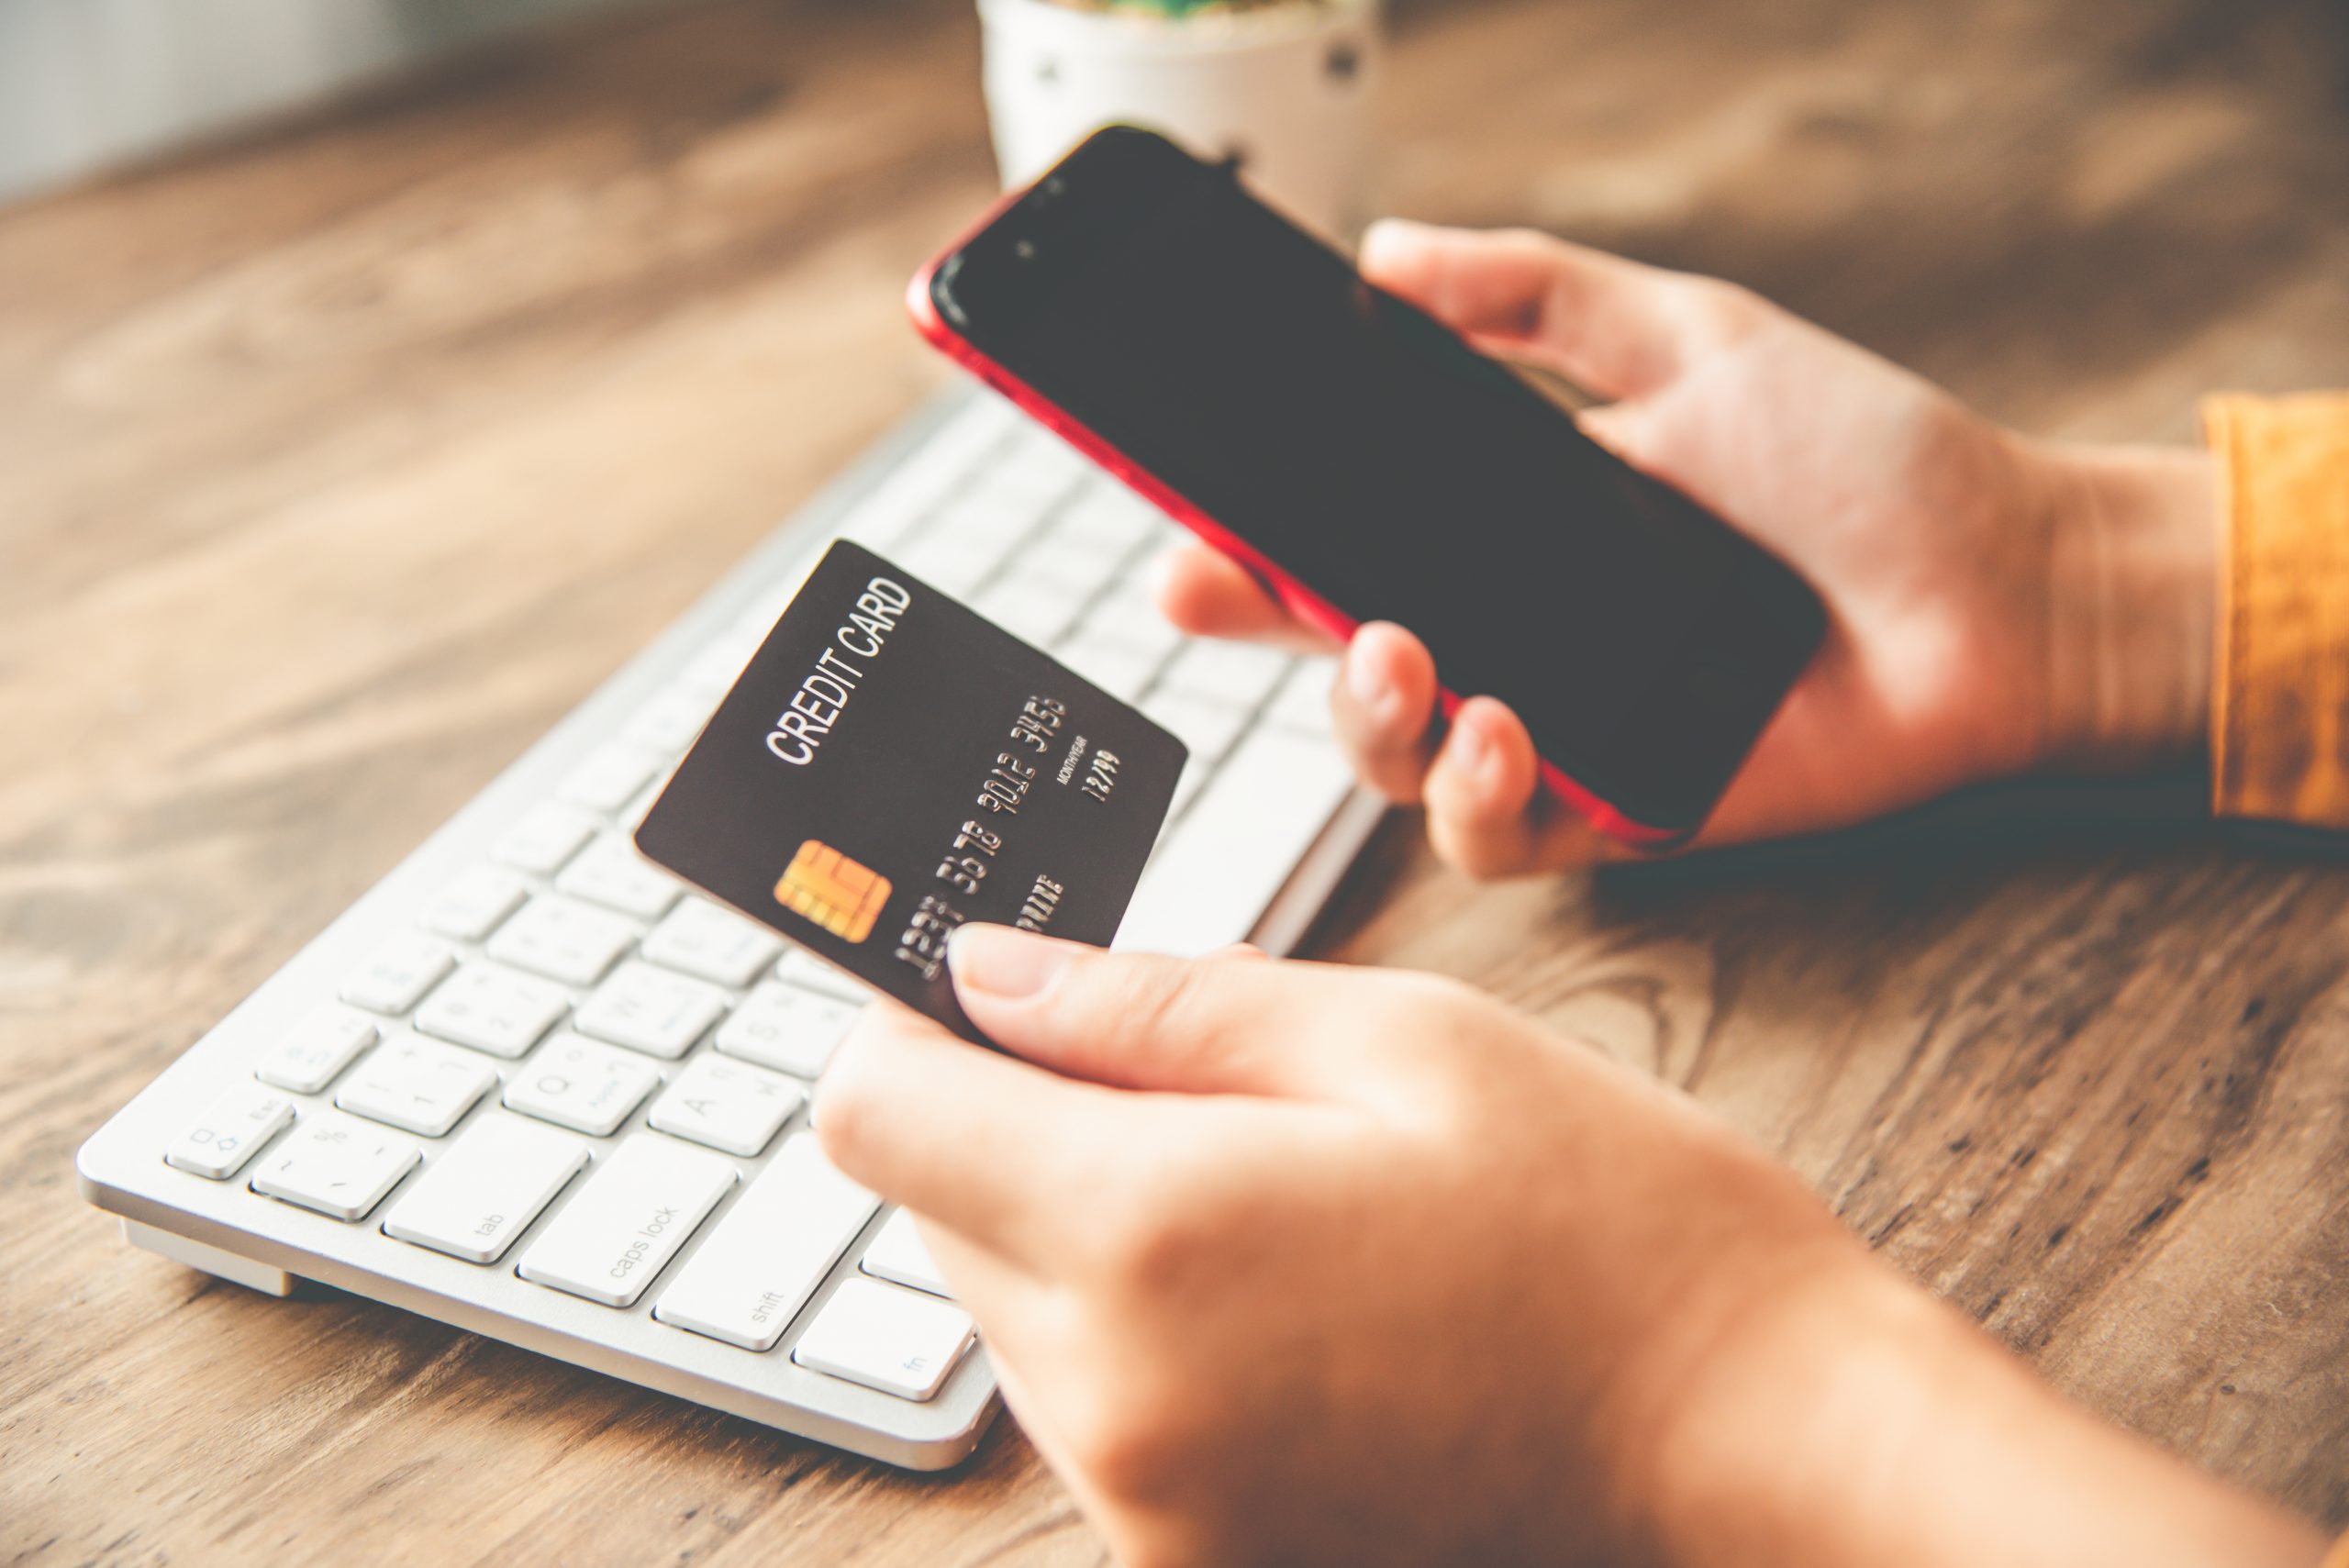 visuel d'une femme effectuant un paiement en ligne avec sa carte bancaire sur son téléphone